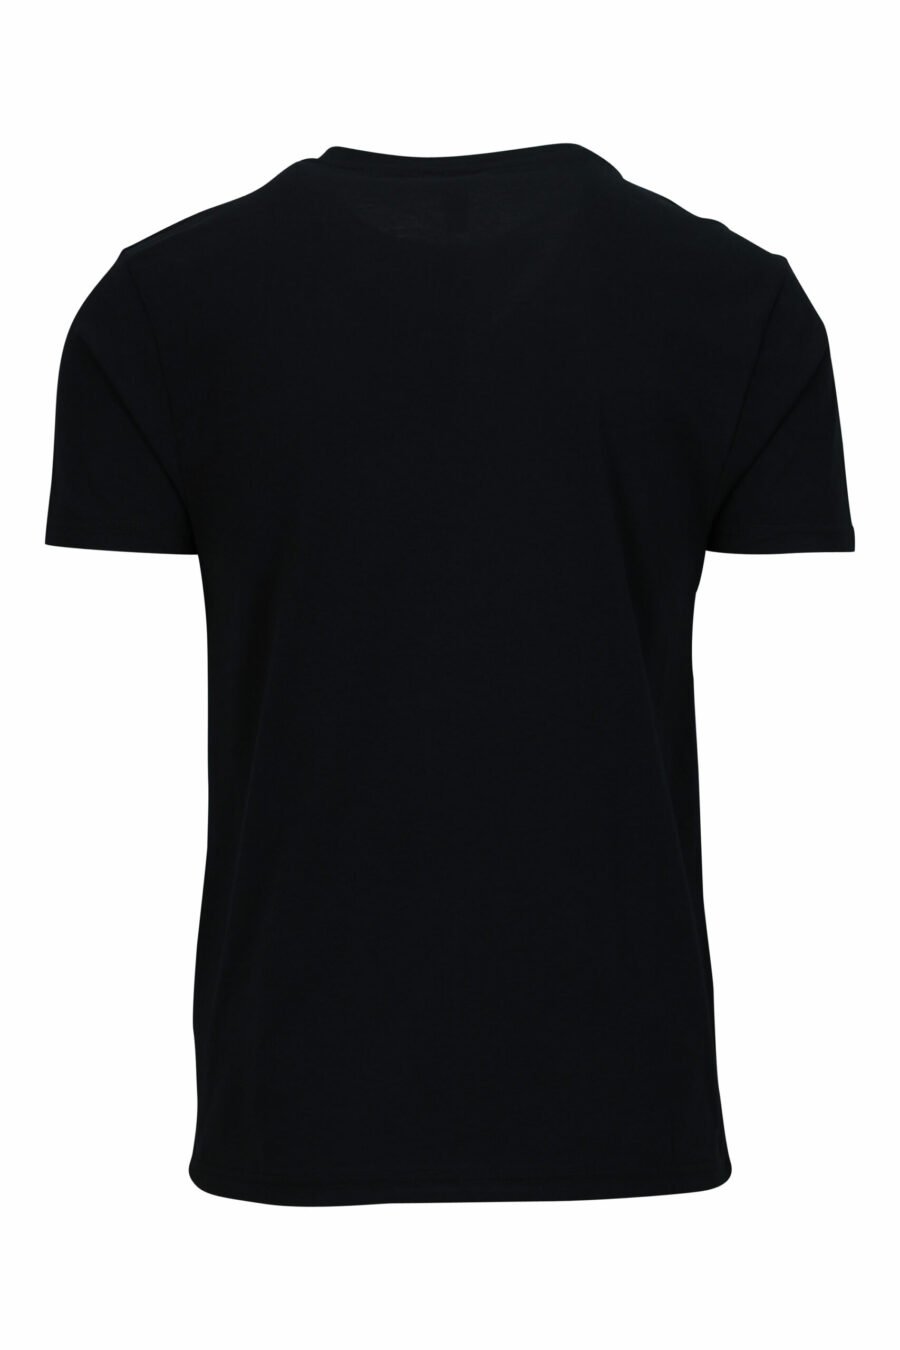 T-shirt noir avec logo blanc et ruban rouge sur les épaules - 667113604275 1 scaled